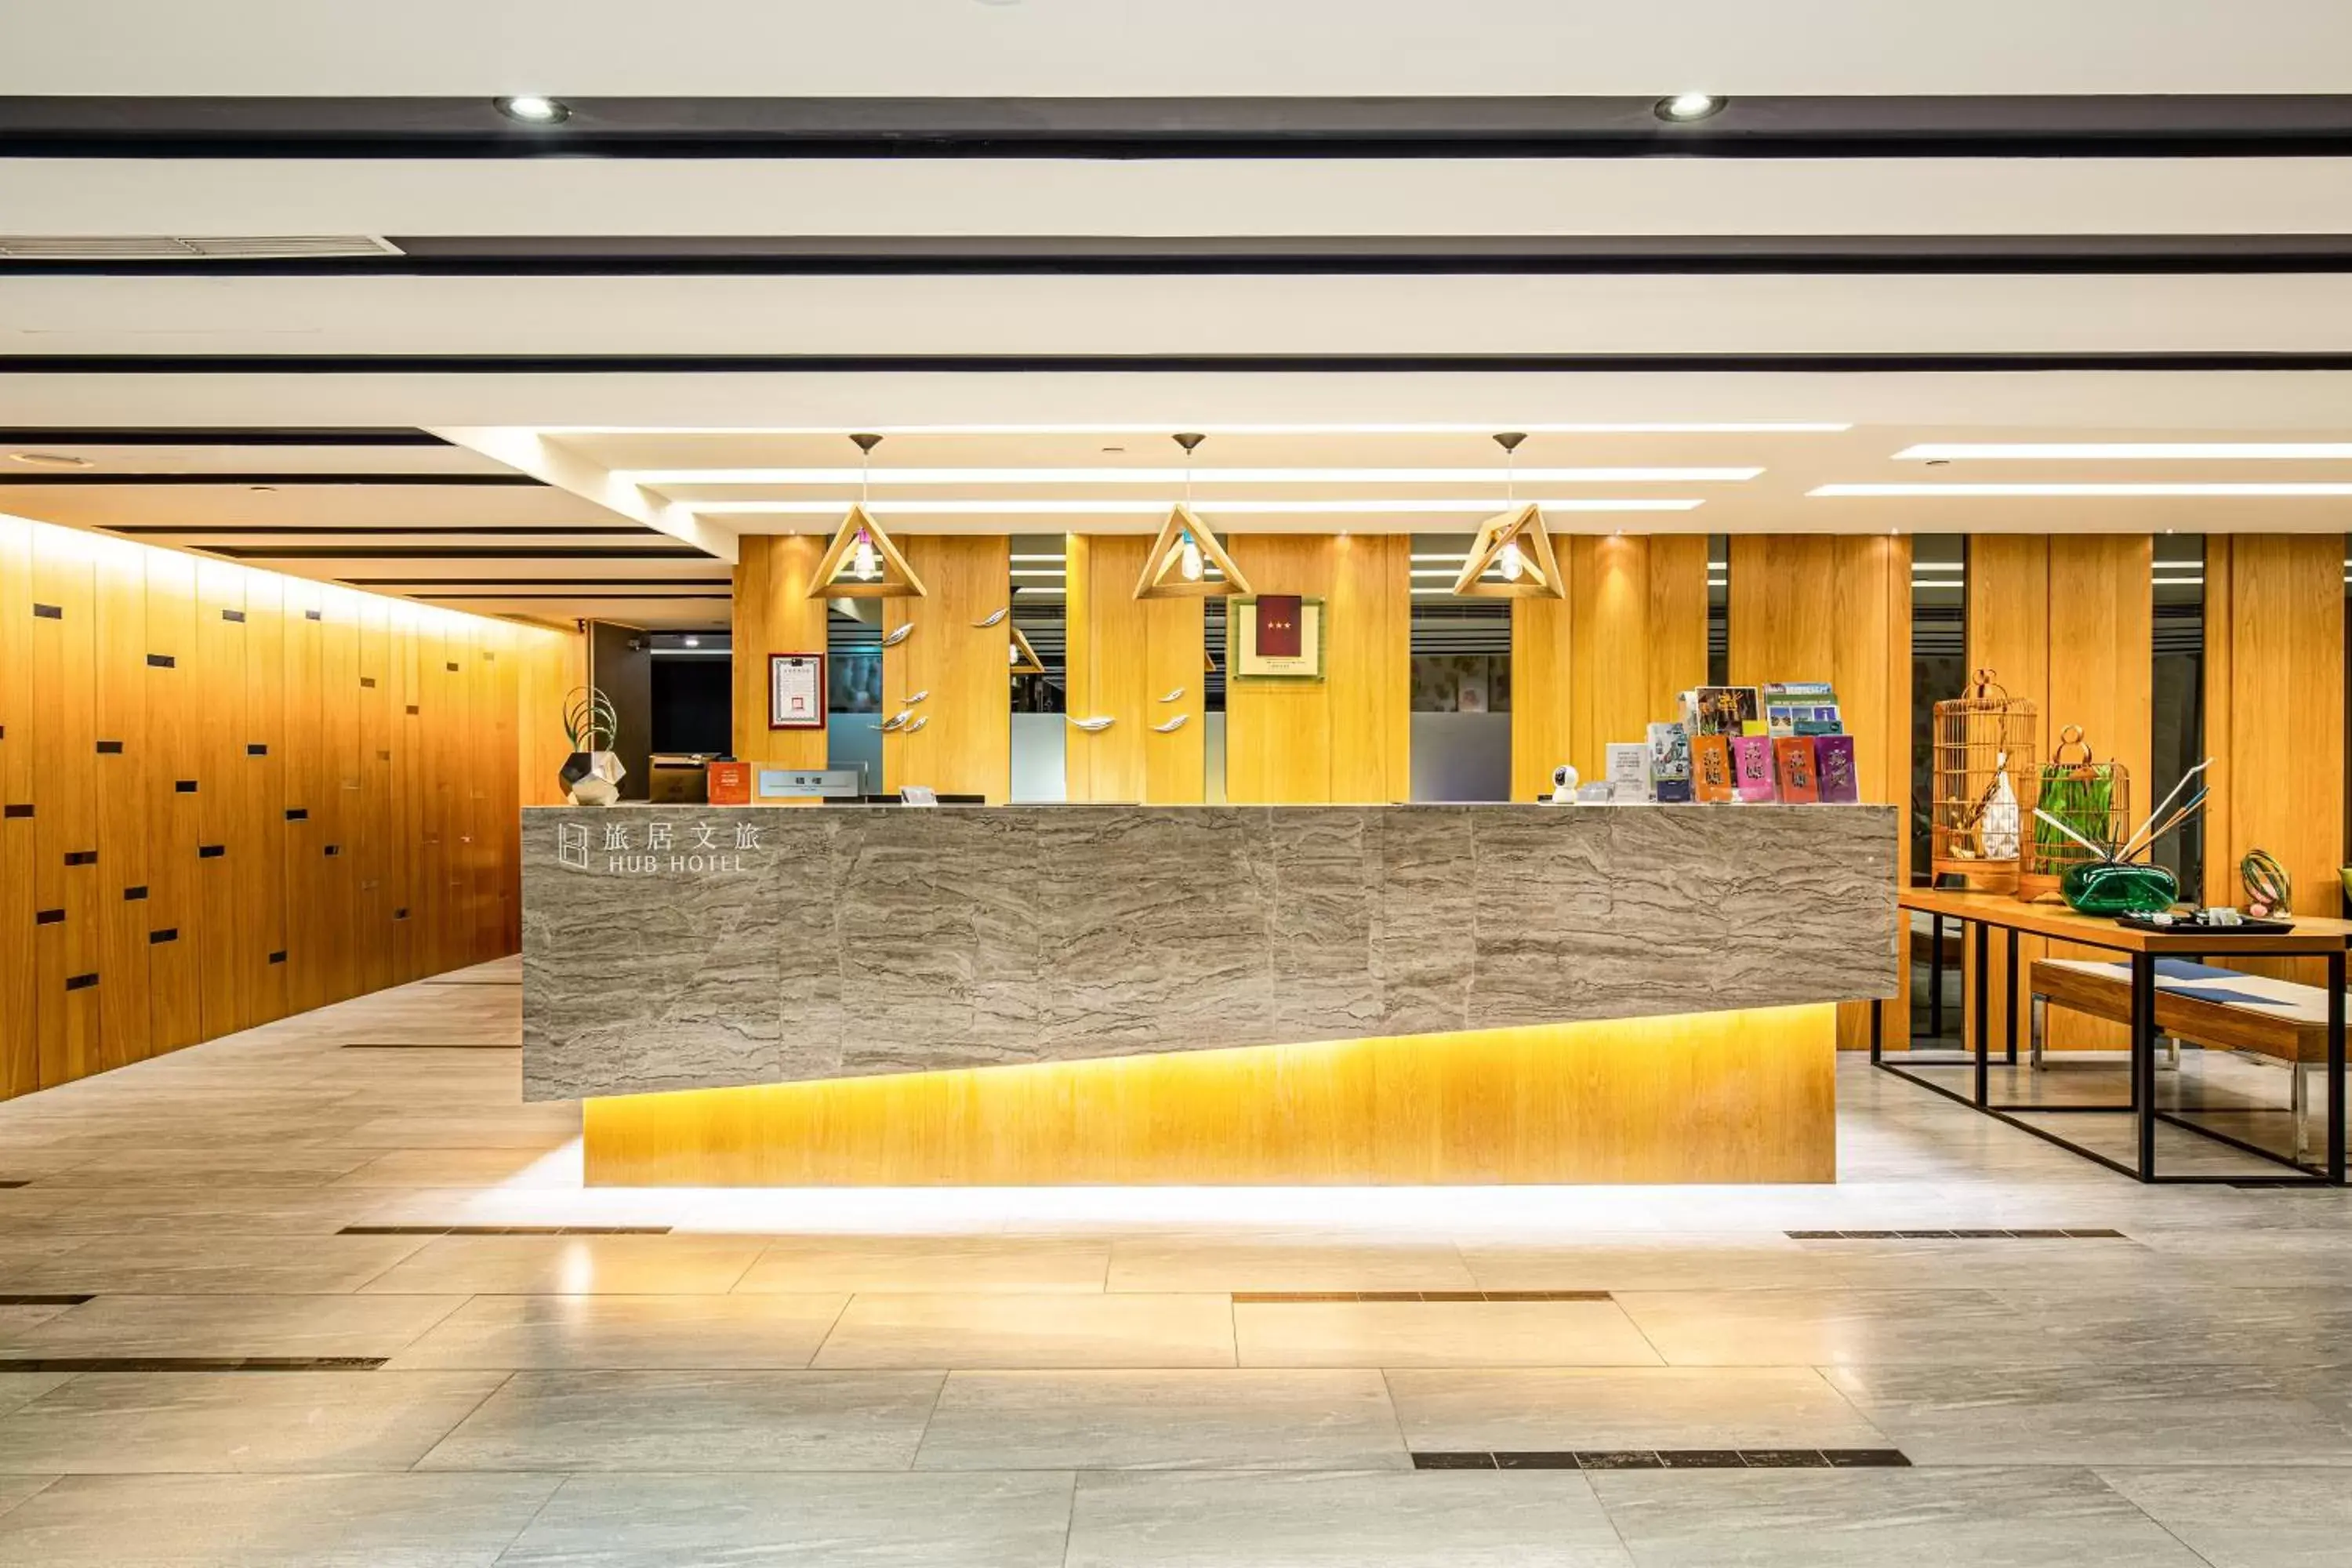 Lobby or reception, Lobby/Reception in Hub Hotel Kaohsiung Yawan Branch